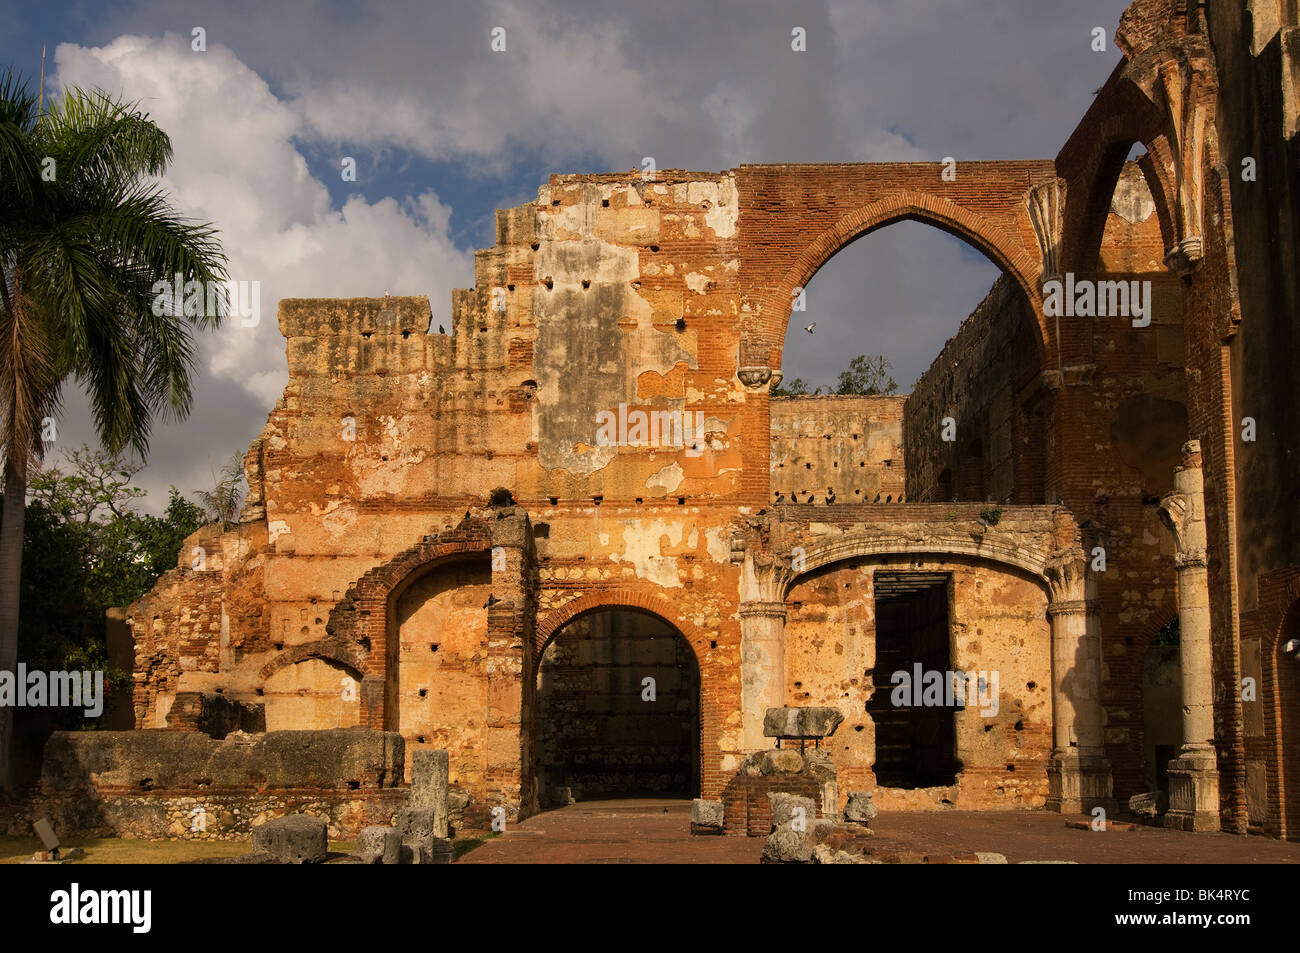 Ruines de l'hôpital du XVe siècle San Nicolas de Bari Dans le quartier colonial de Zona, un site classé au patrimoine mondial de l'UNESCO En République dominicaine de Saint-Domingue Banque D'Images